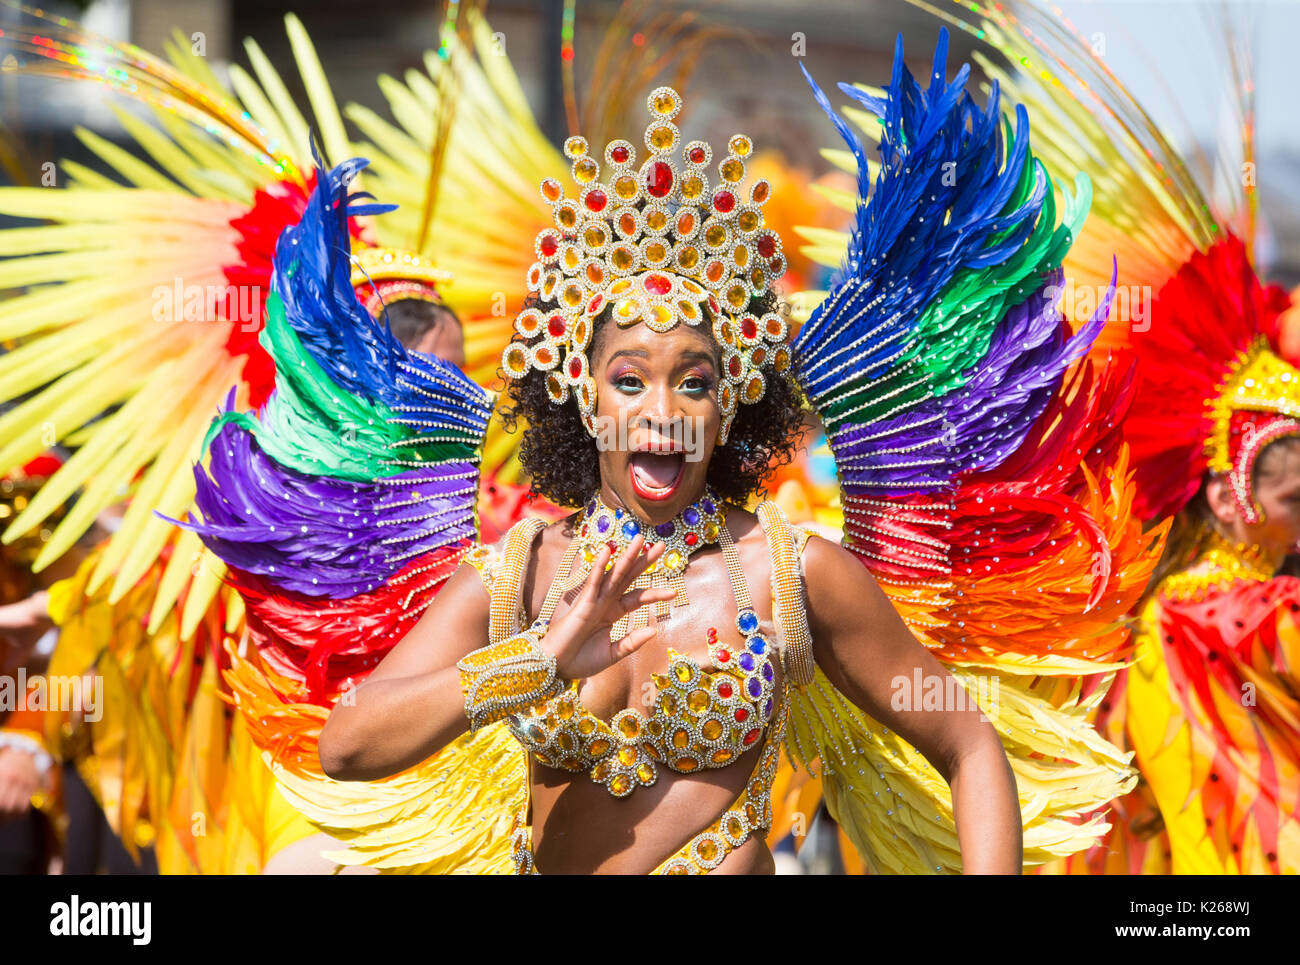 Les gens en costume au Notting Hill Carnival 2017. Jusqu'à 1 millions de personnes envahissent les rues de Notting Hill pour le plus grand carnaval de rue. Banque D'Images